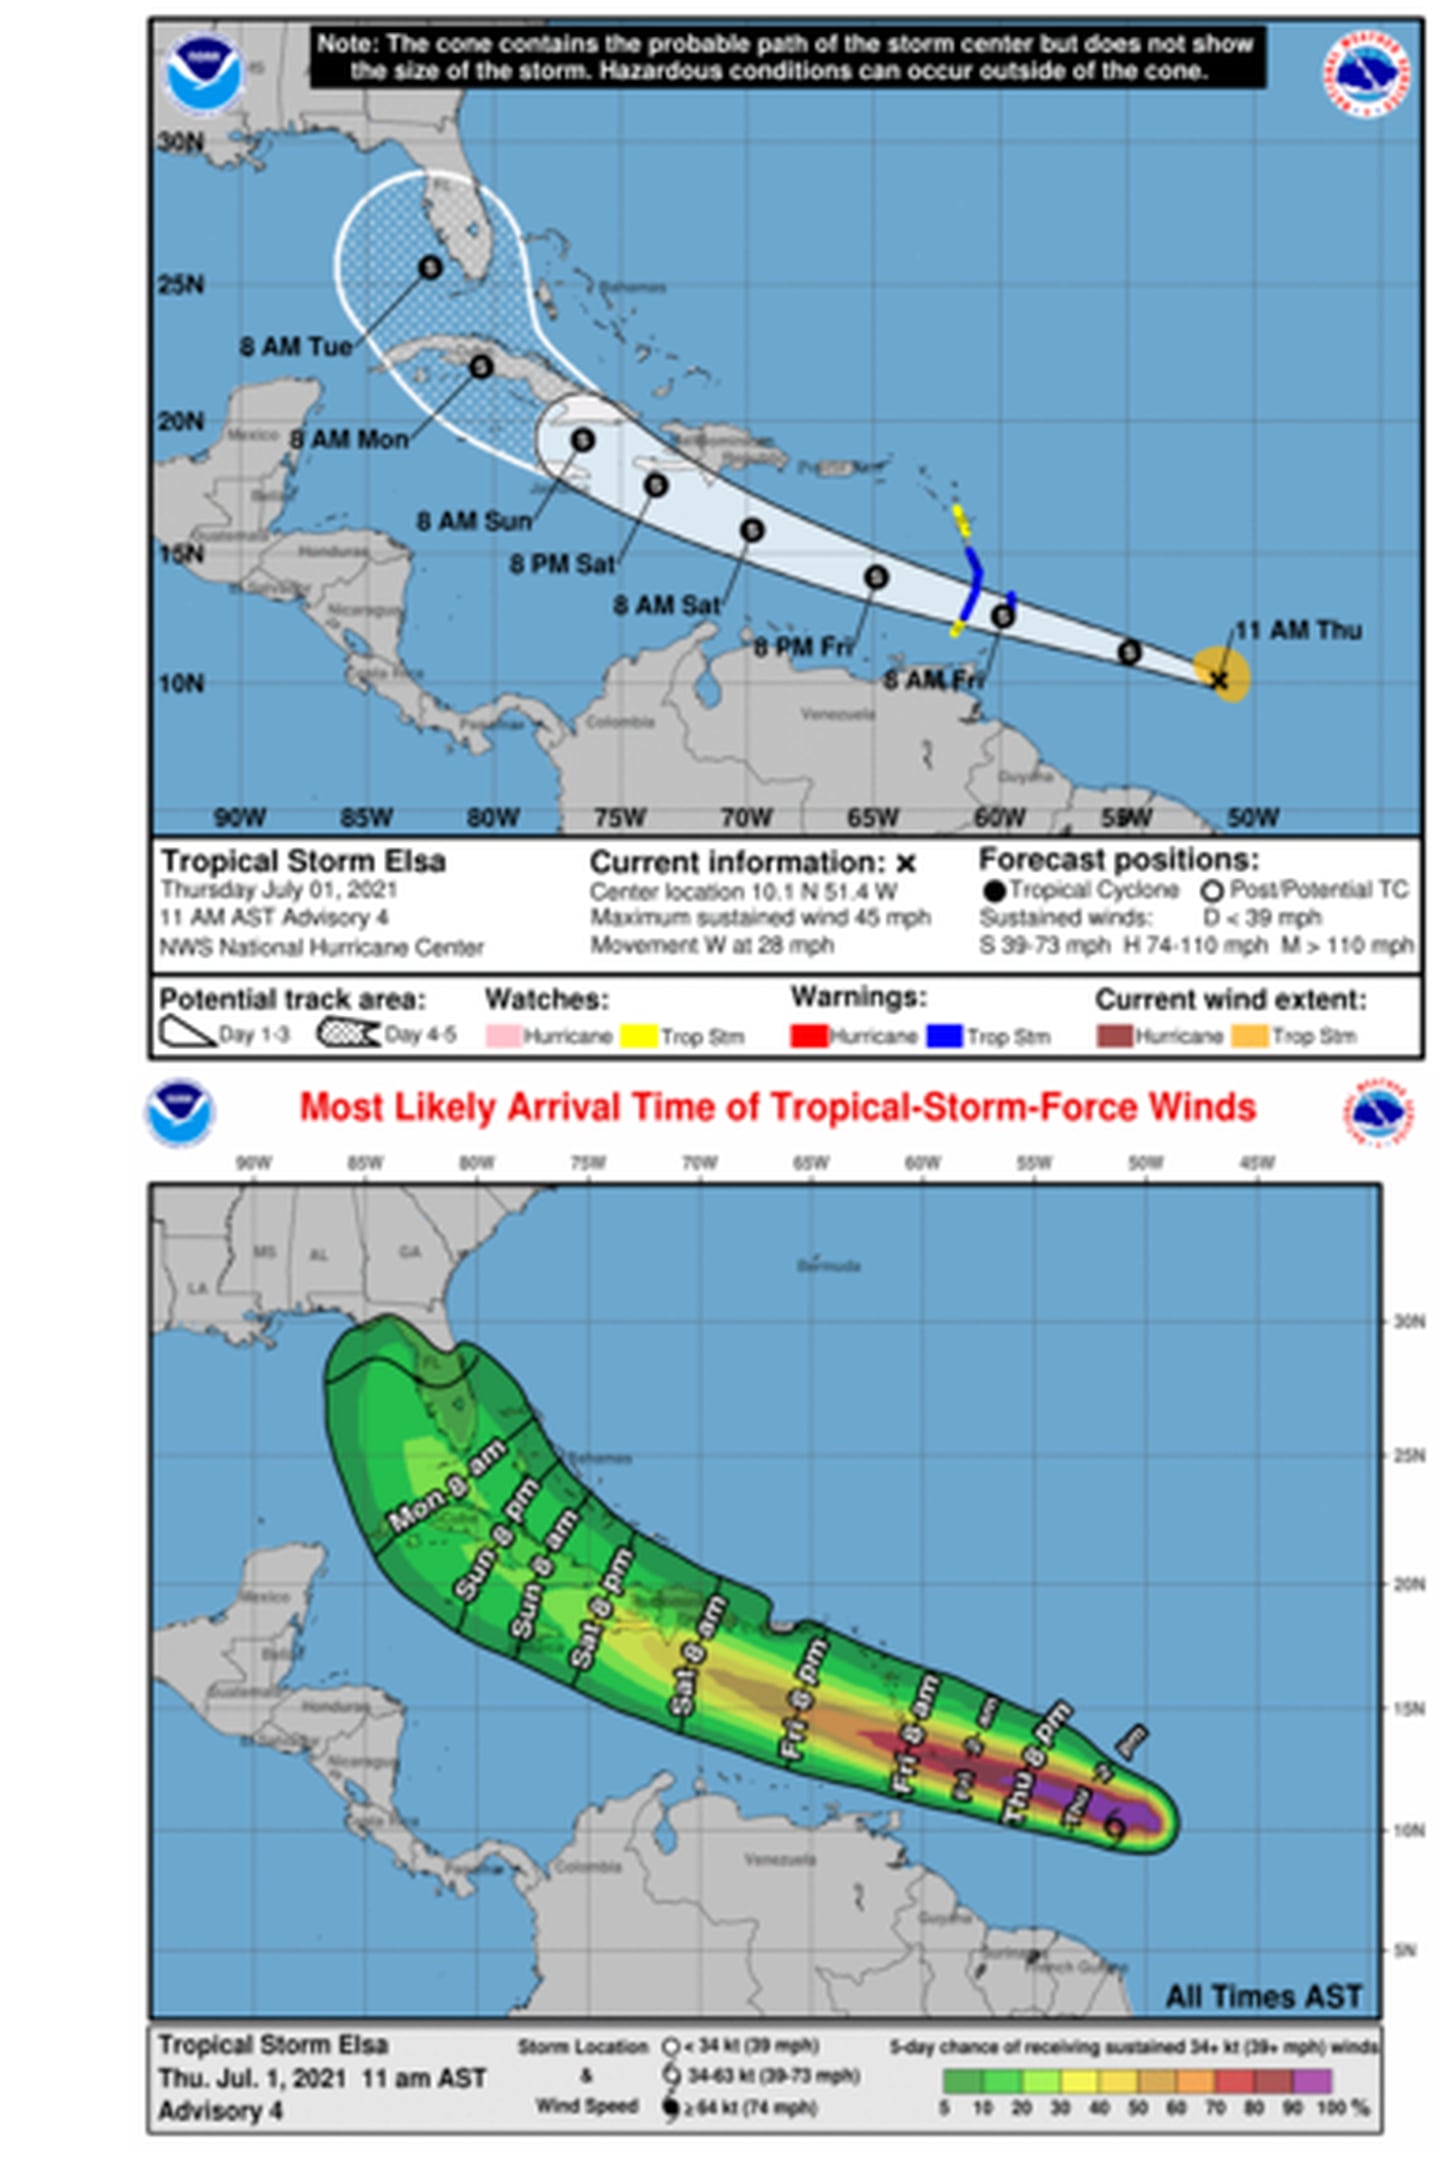 Aunque entrará al mar Caribe, el ciclón Elsa pasará muy lejos de nuestras costas el fin de semana, según la trayectoria prevista. Imagen: Centro Nal. Huracanes.